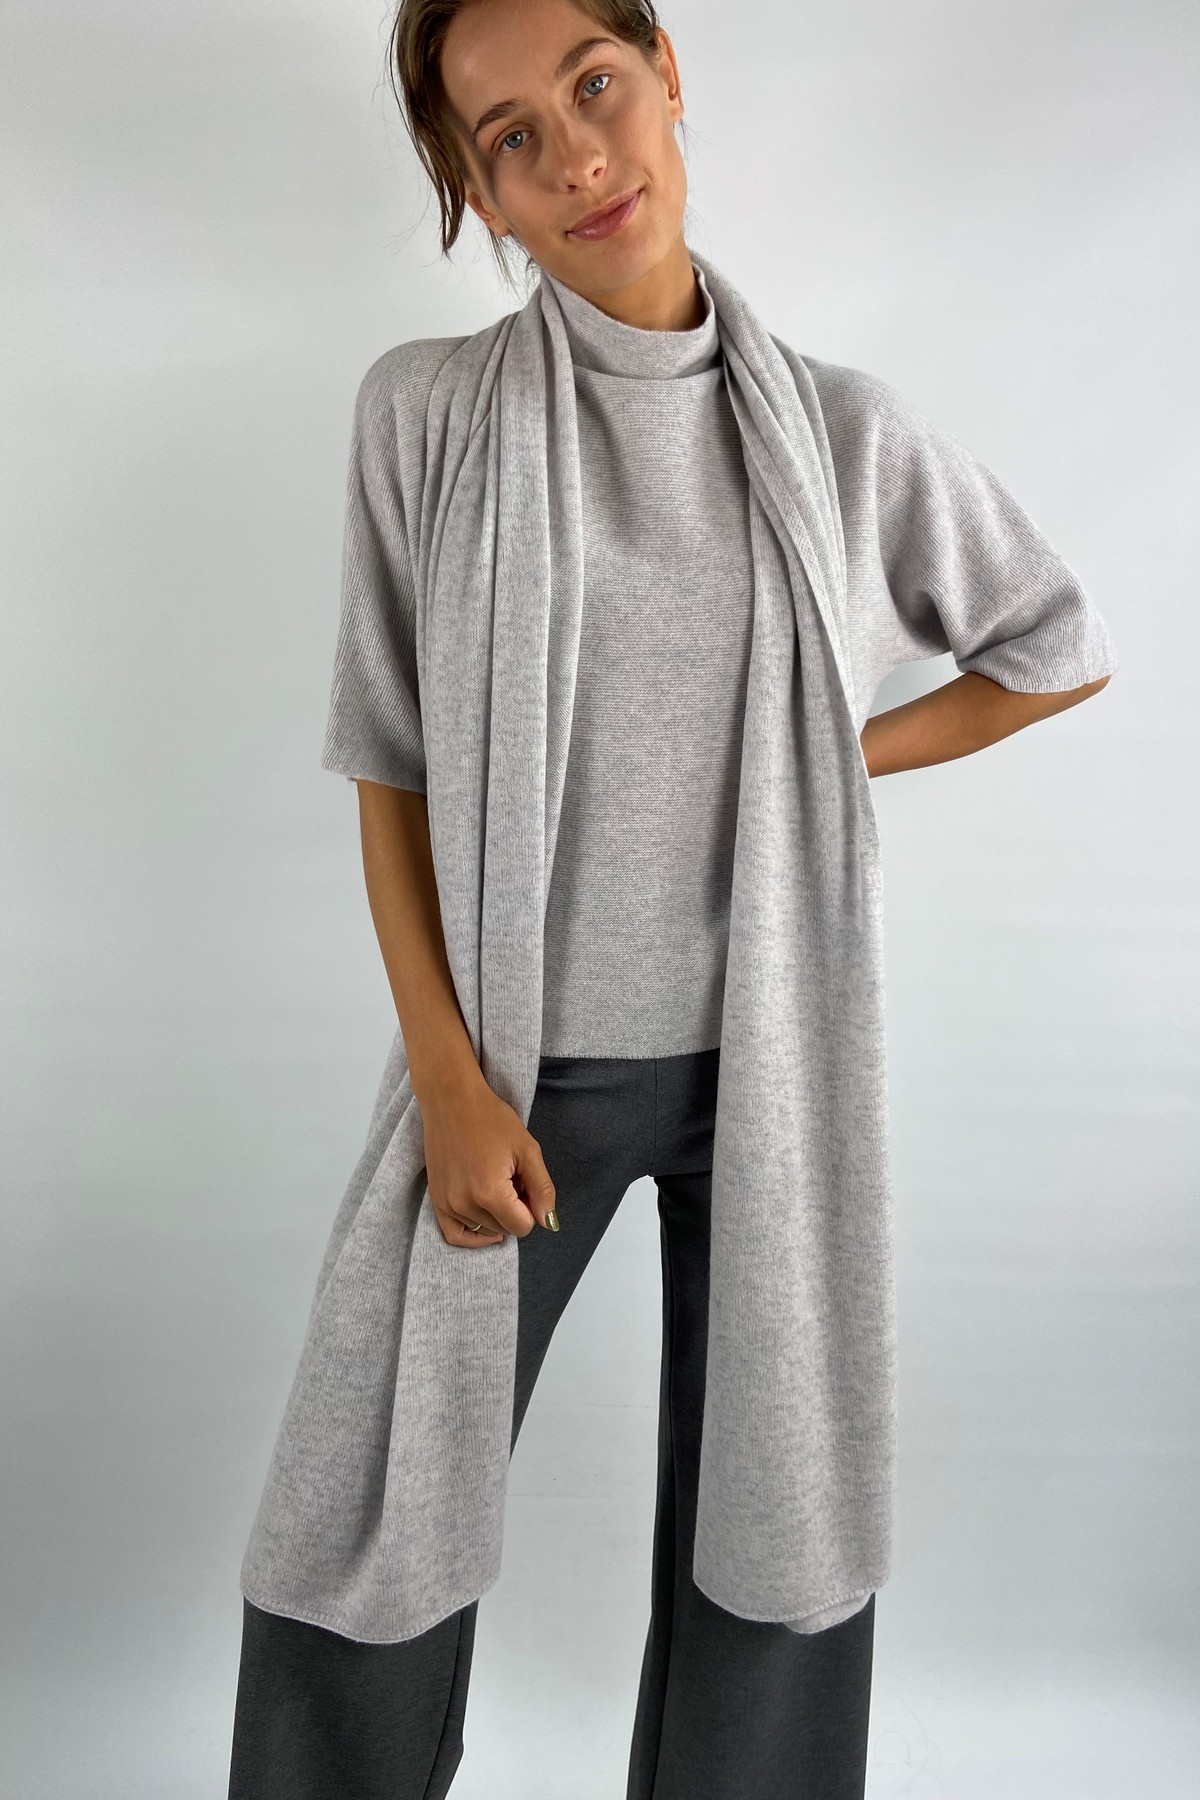 Sjaal wol cashmere in de kleur lichtgrijs van het merk FFC